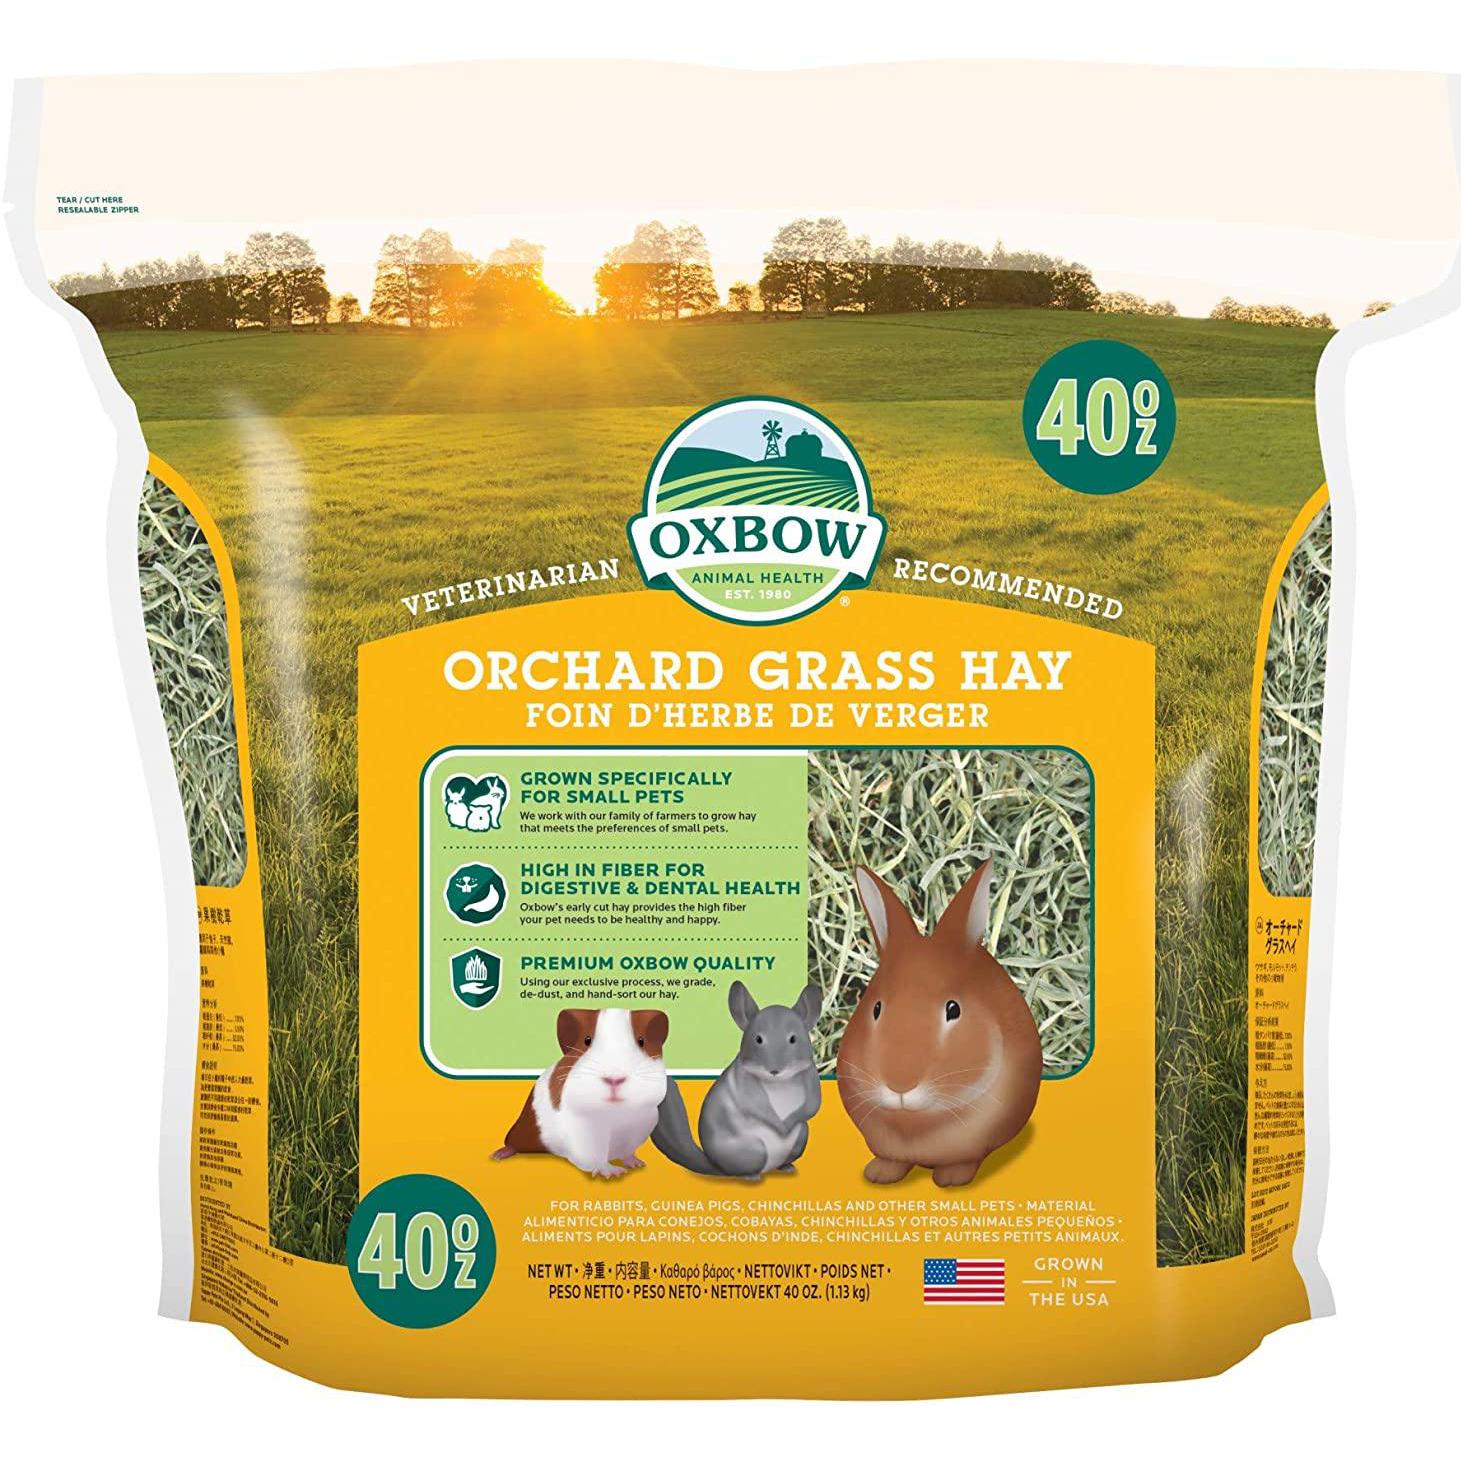 Oxbow Orchard Grass Hay Fieno per Piccoli Animali - 1,13 Kg